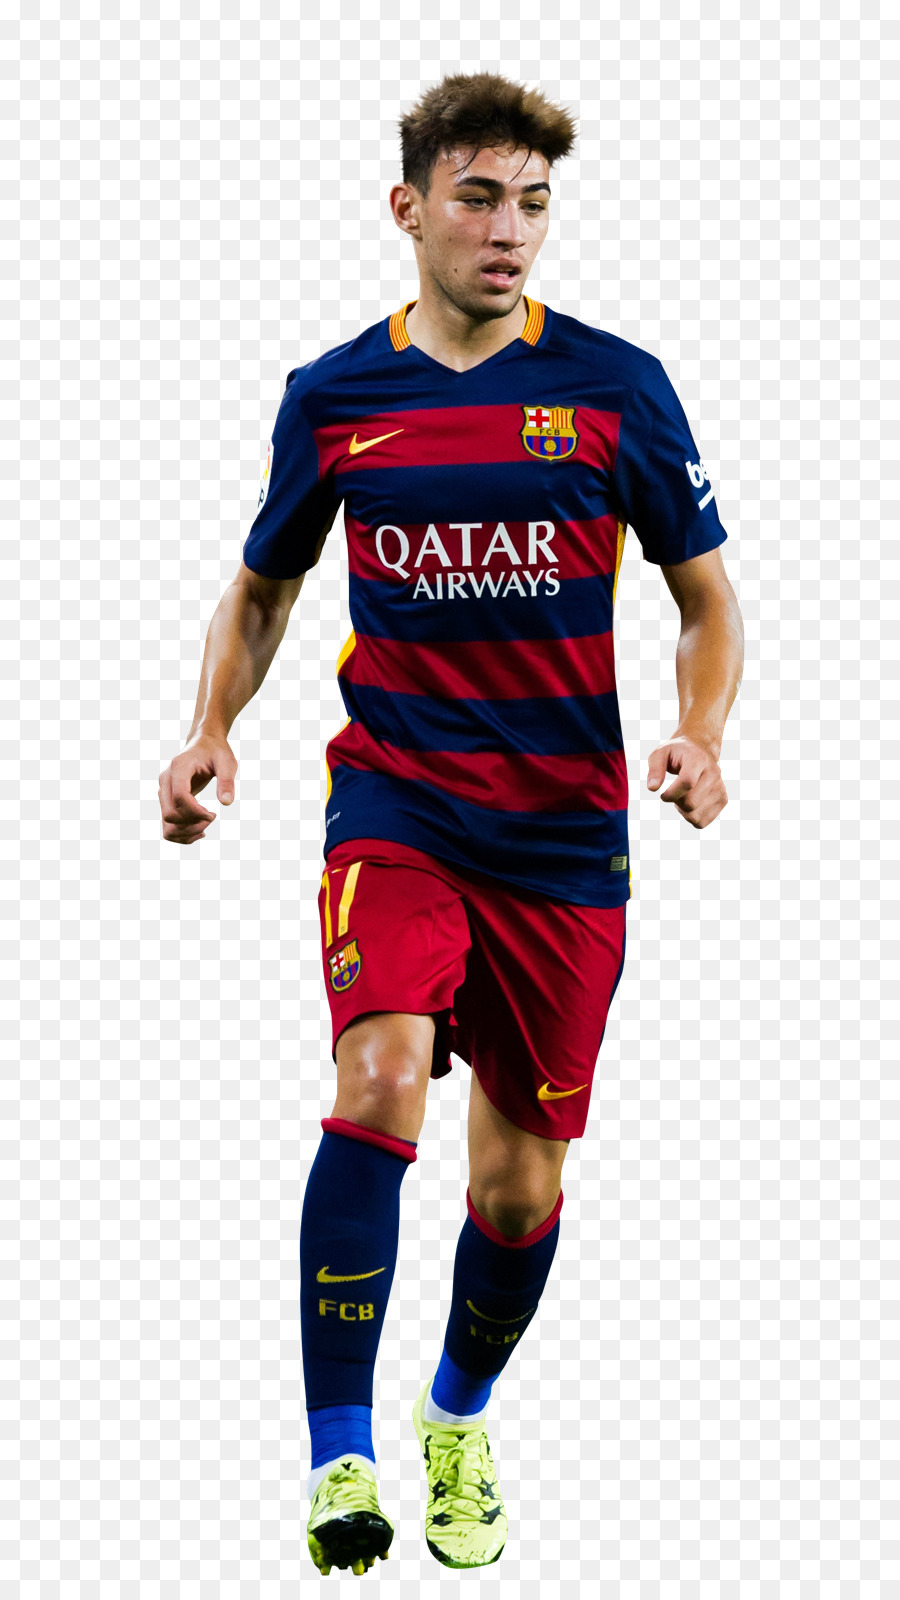 Linh El Haddadi cầu thủ bóng Đá 2015-16 Barcelona mùa Valencia - Barcelona